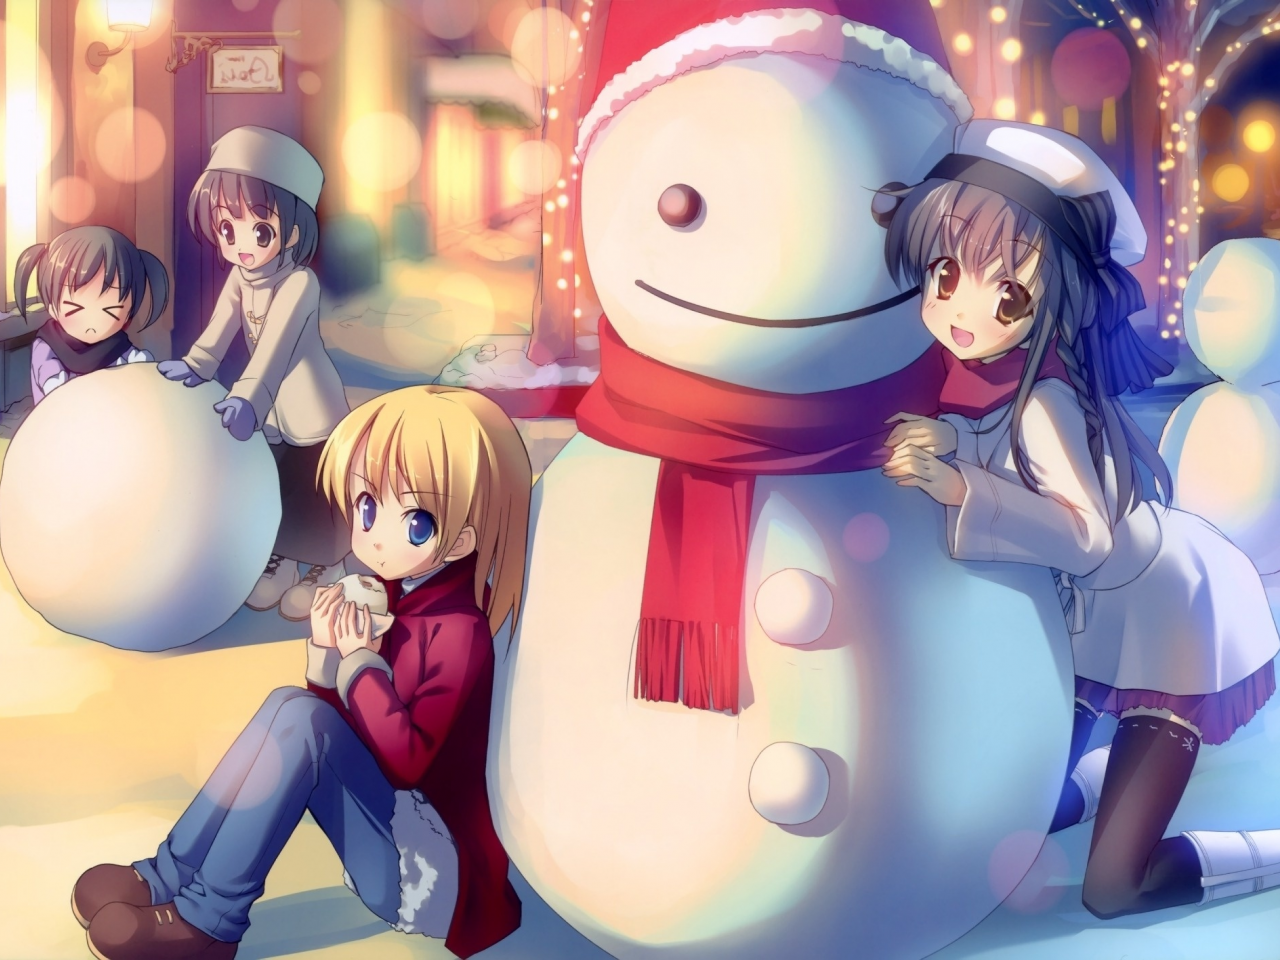 зима, снеговик, настроение, аниме, друзья